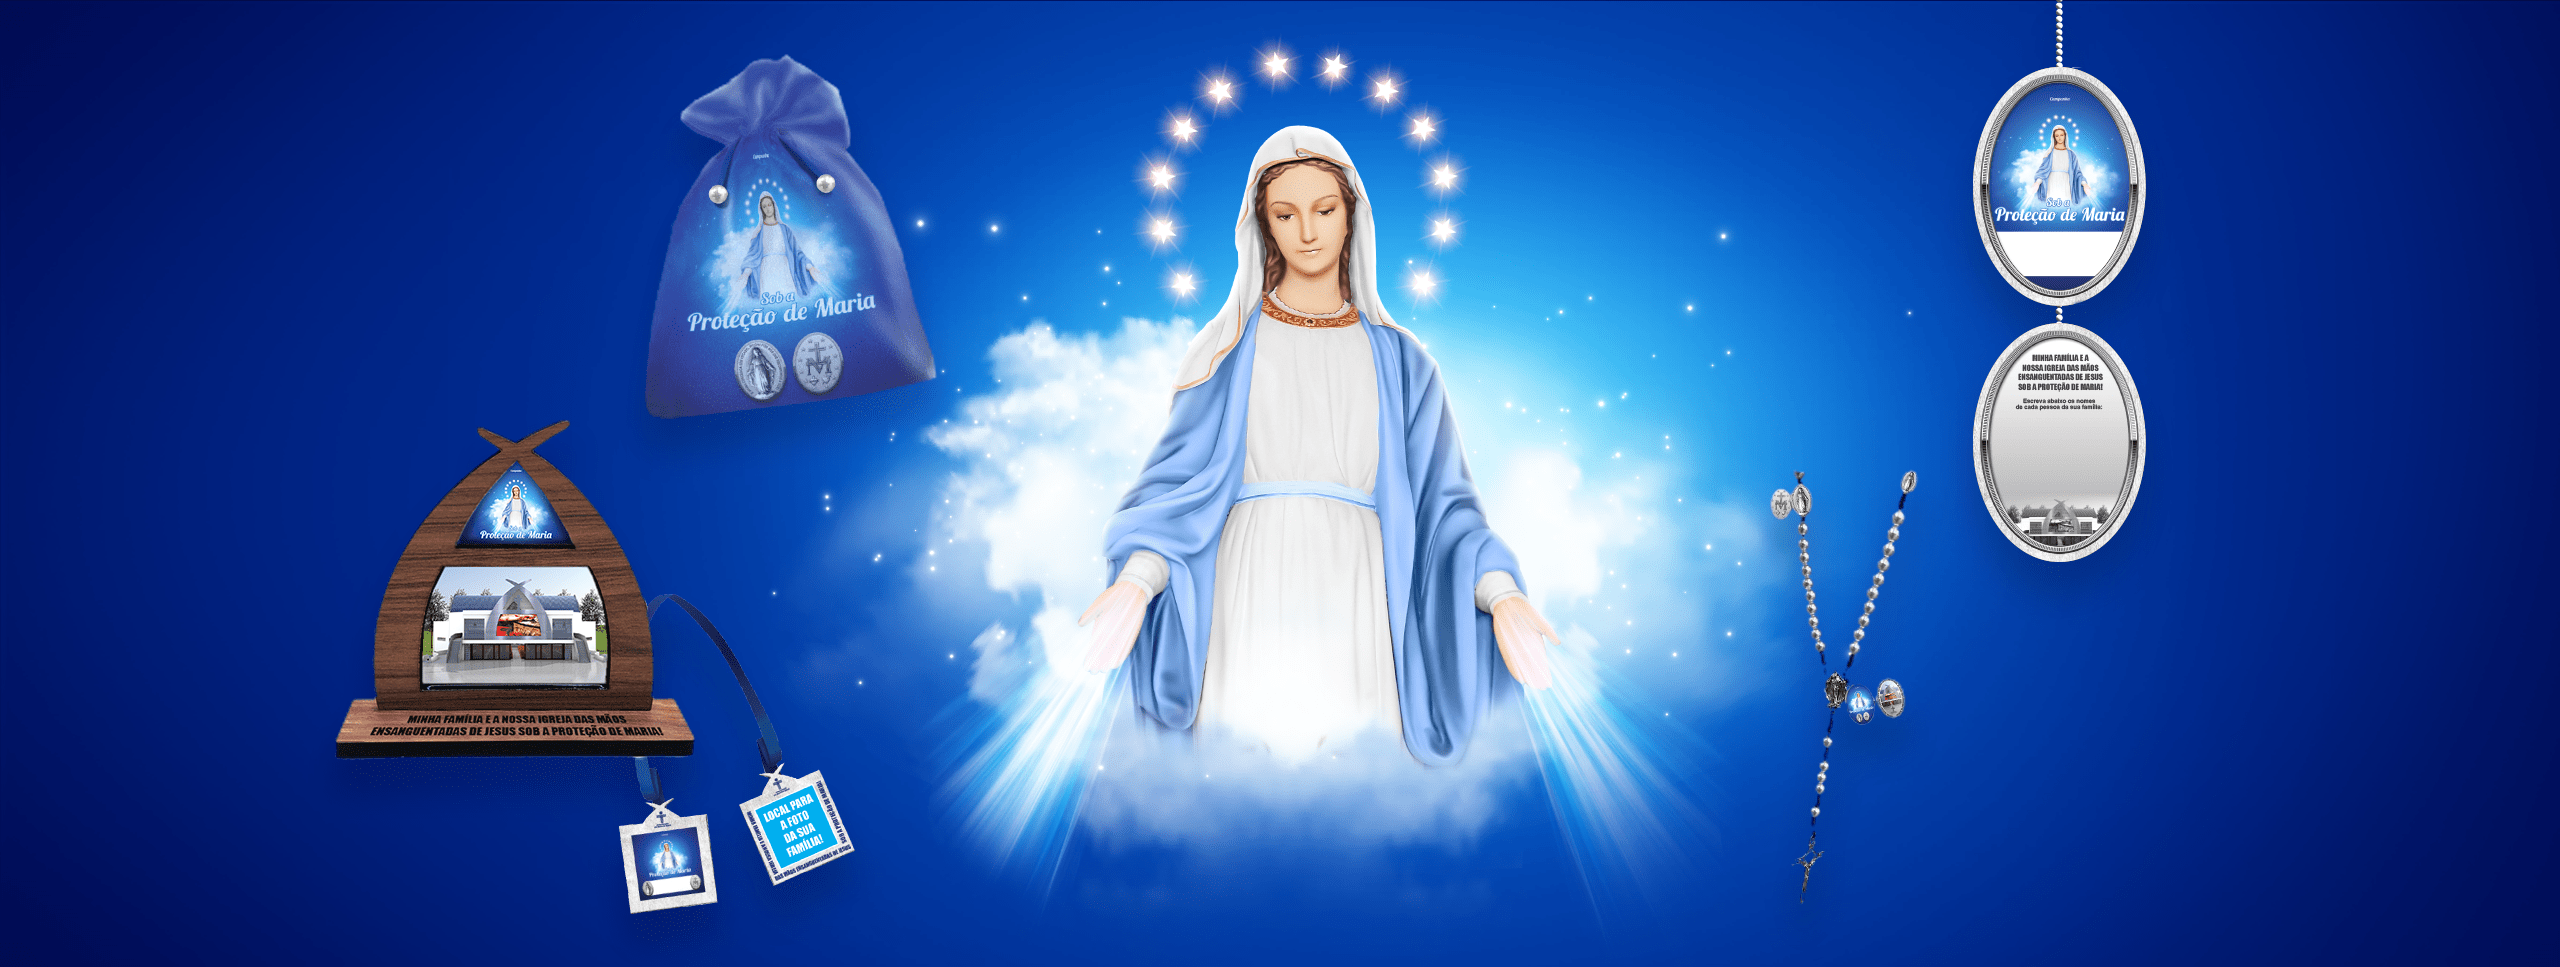 Campanha Sob a Proteção de Maria – Ação Social